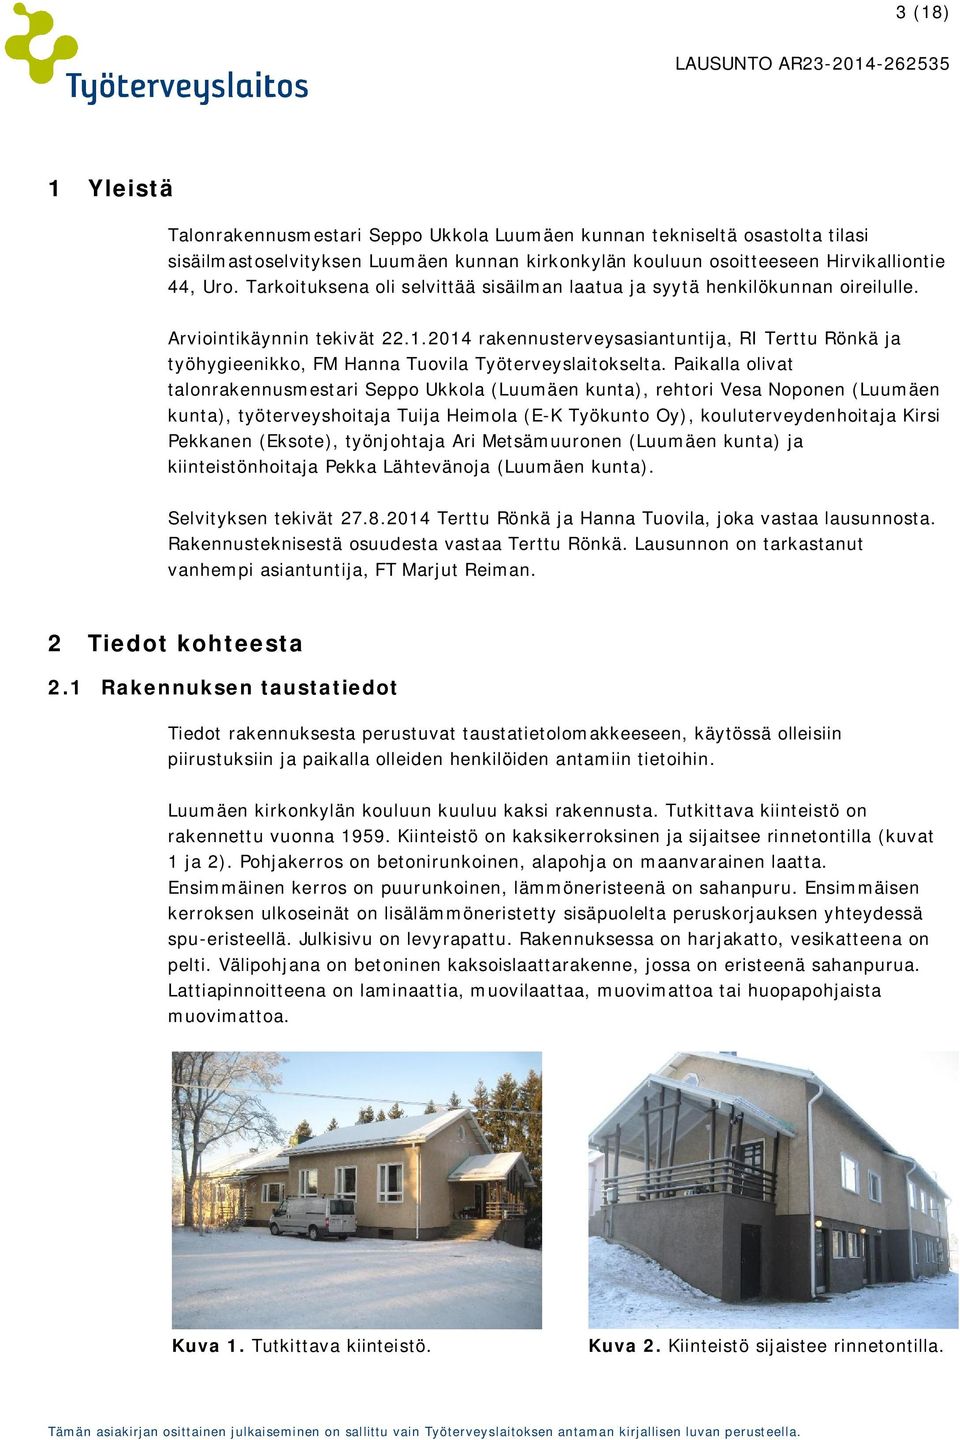 2014 rakennusterveysasiantuntija, RI Terttu Rönkä ja työhygieenikko, FM Hanna Tuovila Työterveyslaitokselta.